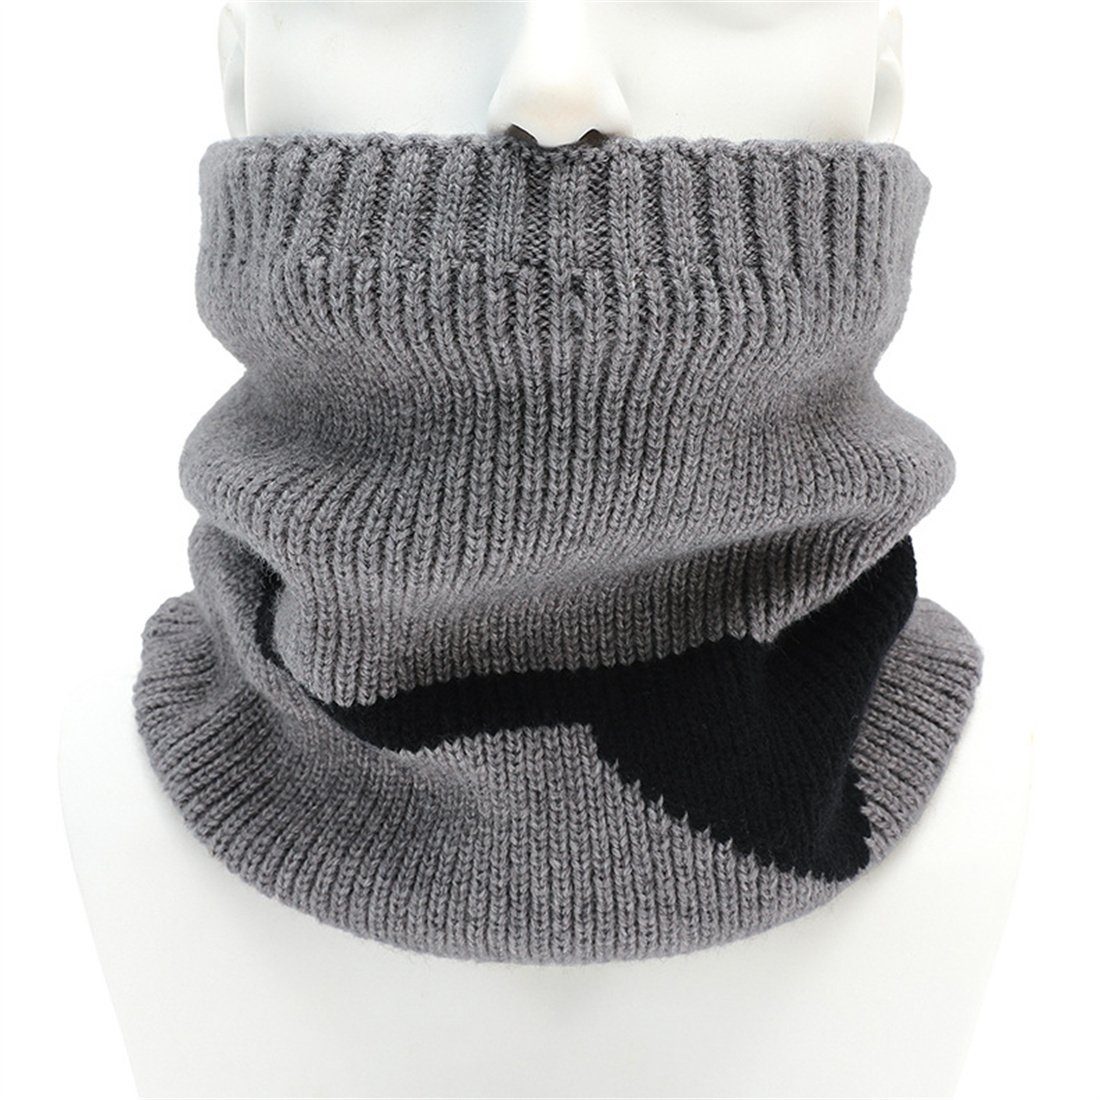 Abdeckung Modeschal gepolstert Unisex Schal,Winter gestrickt warm gestrickt DÖRÖY Hals Grau